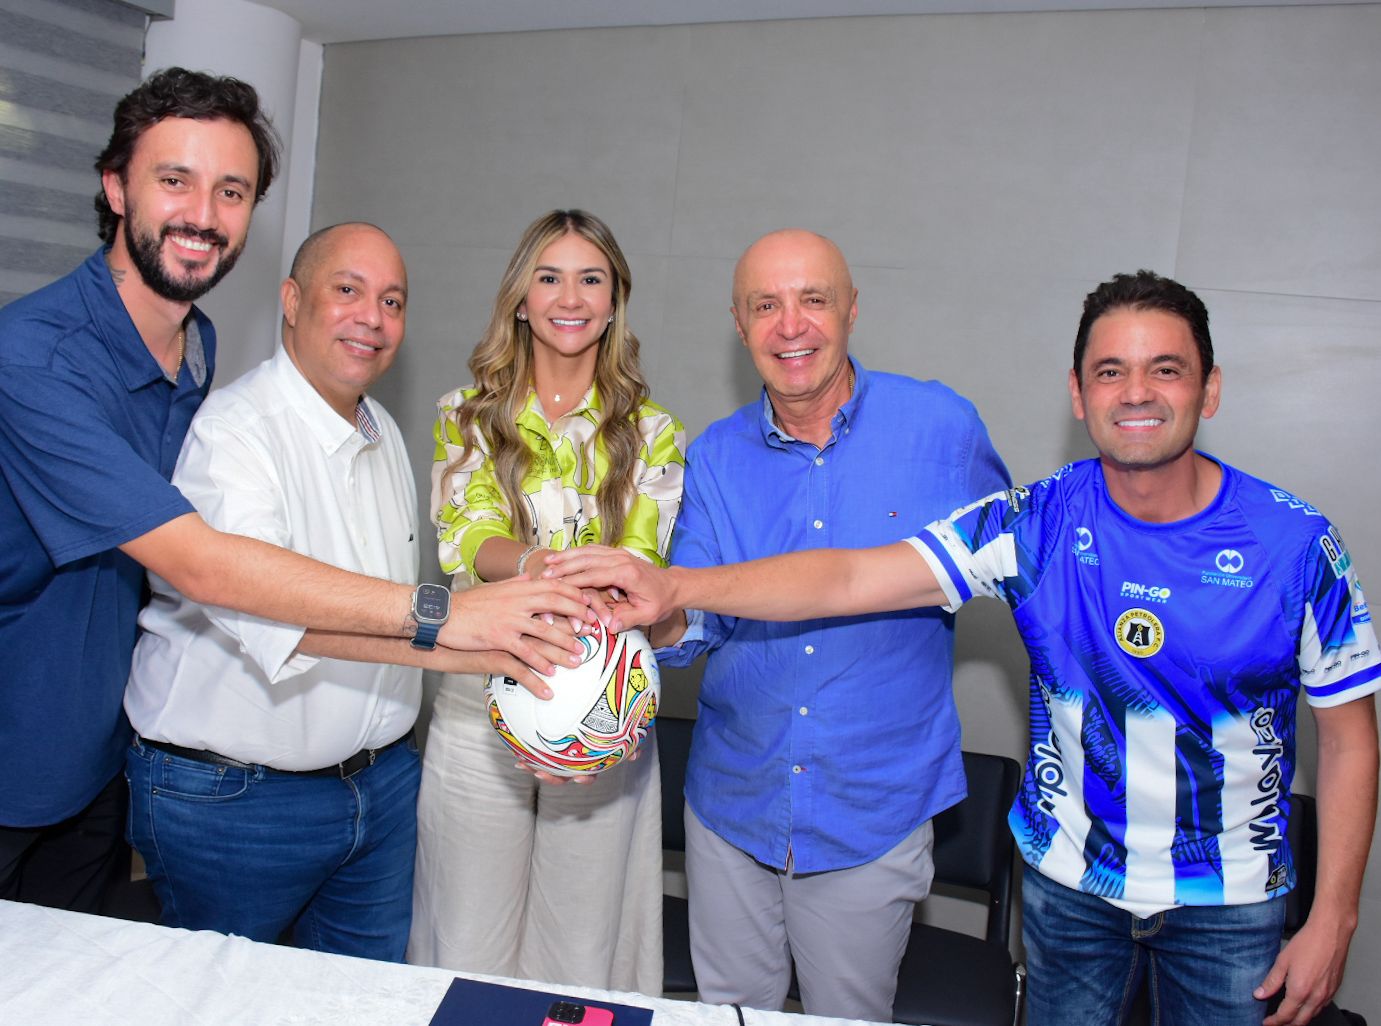 ¡Somos de la A! Valledupar oficializa llegada del equipo profesional de fútbol Alianza F.C.